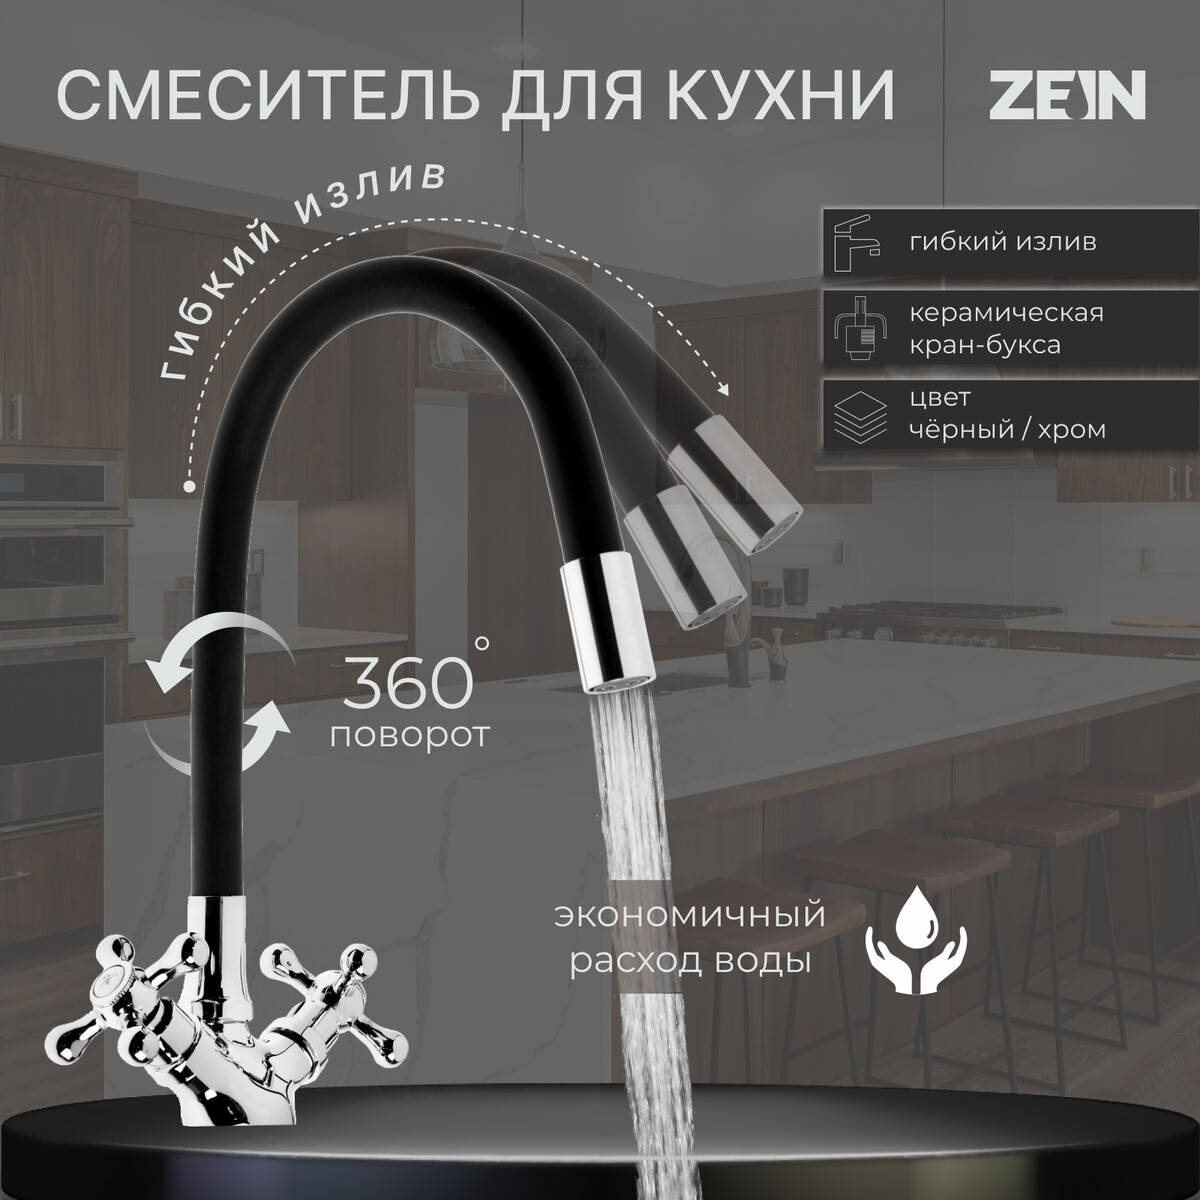 Cмеситель для кухни zein z2104, двухвентильный, силиконовый излив, черный/хром смеситель для кухни solone с кран буксой для одного типа воды хром jik15 a102 a